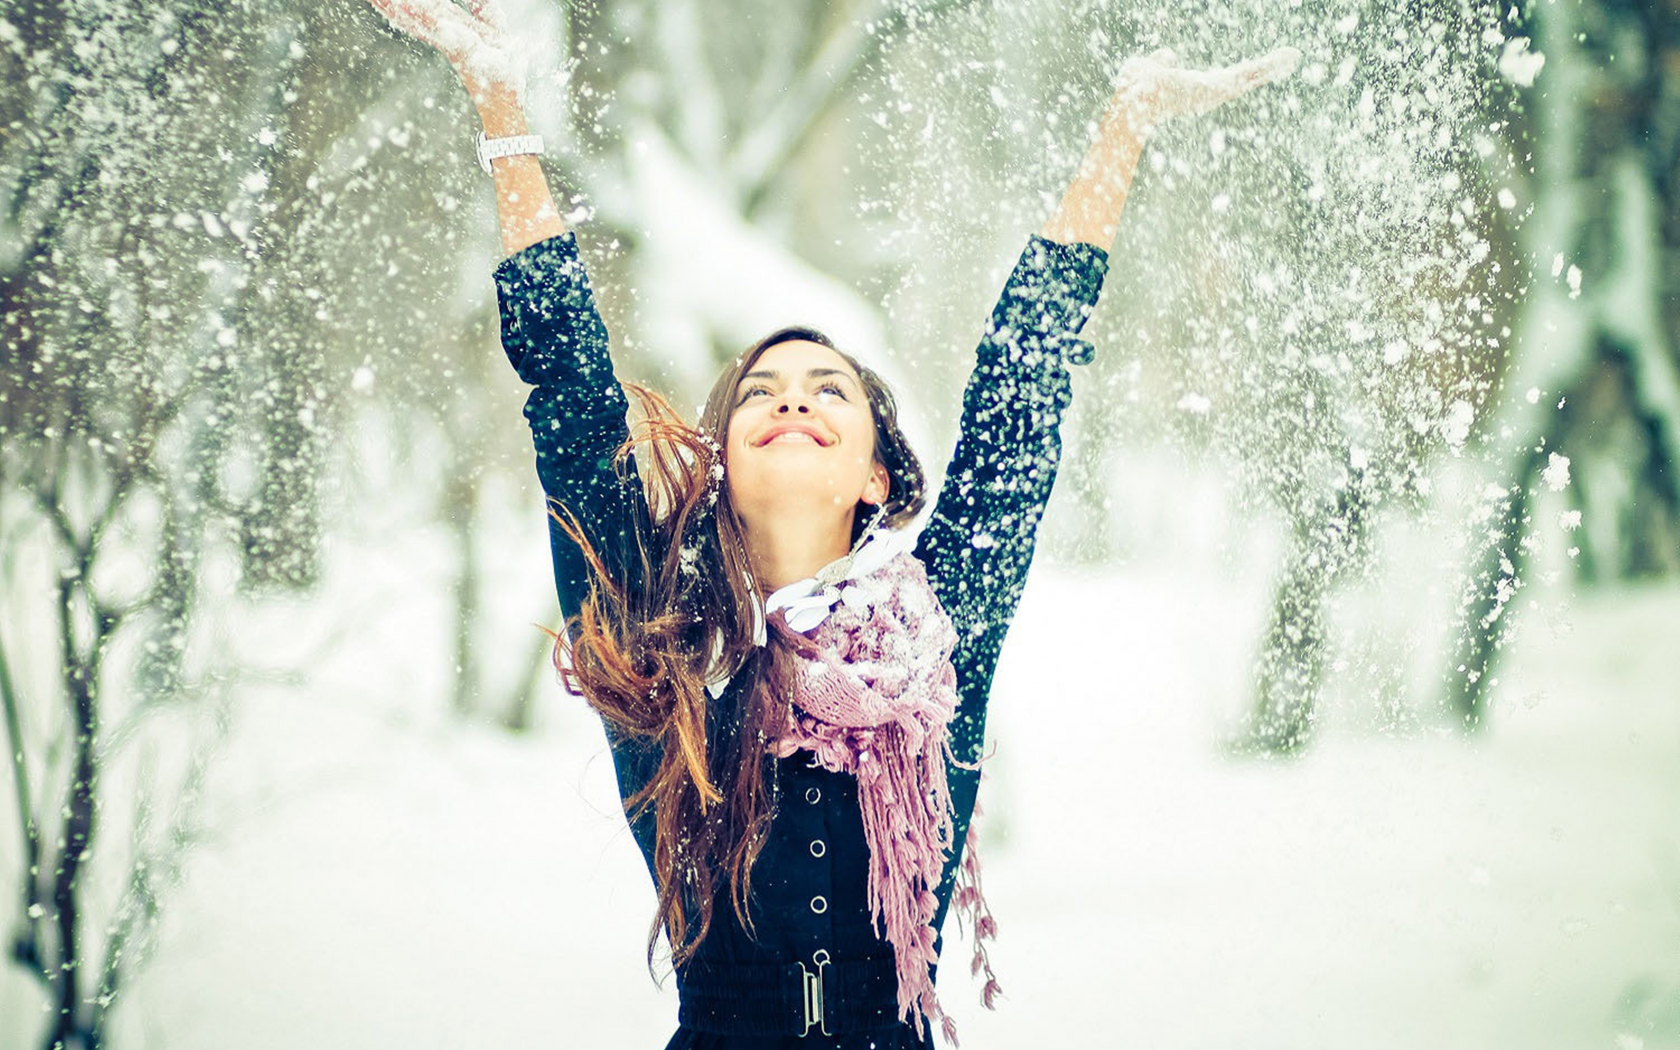 улыбка, смех, девушка, снег, зима, фотосессия